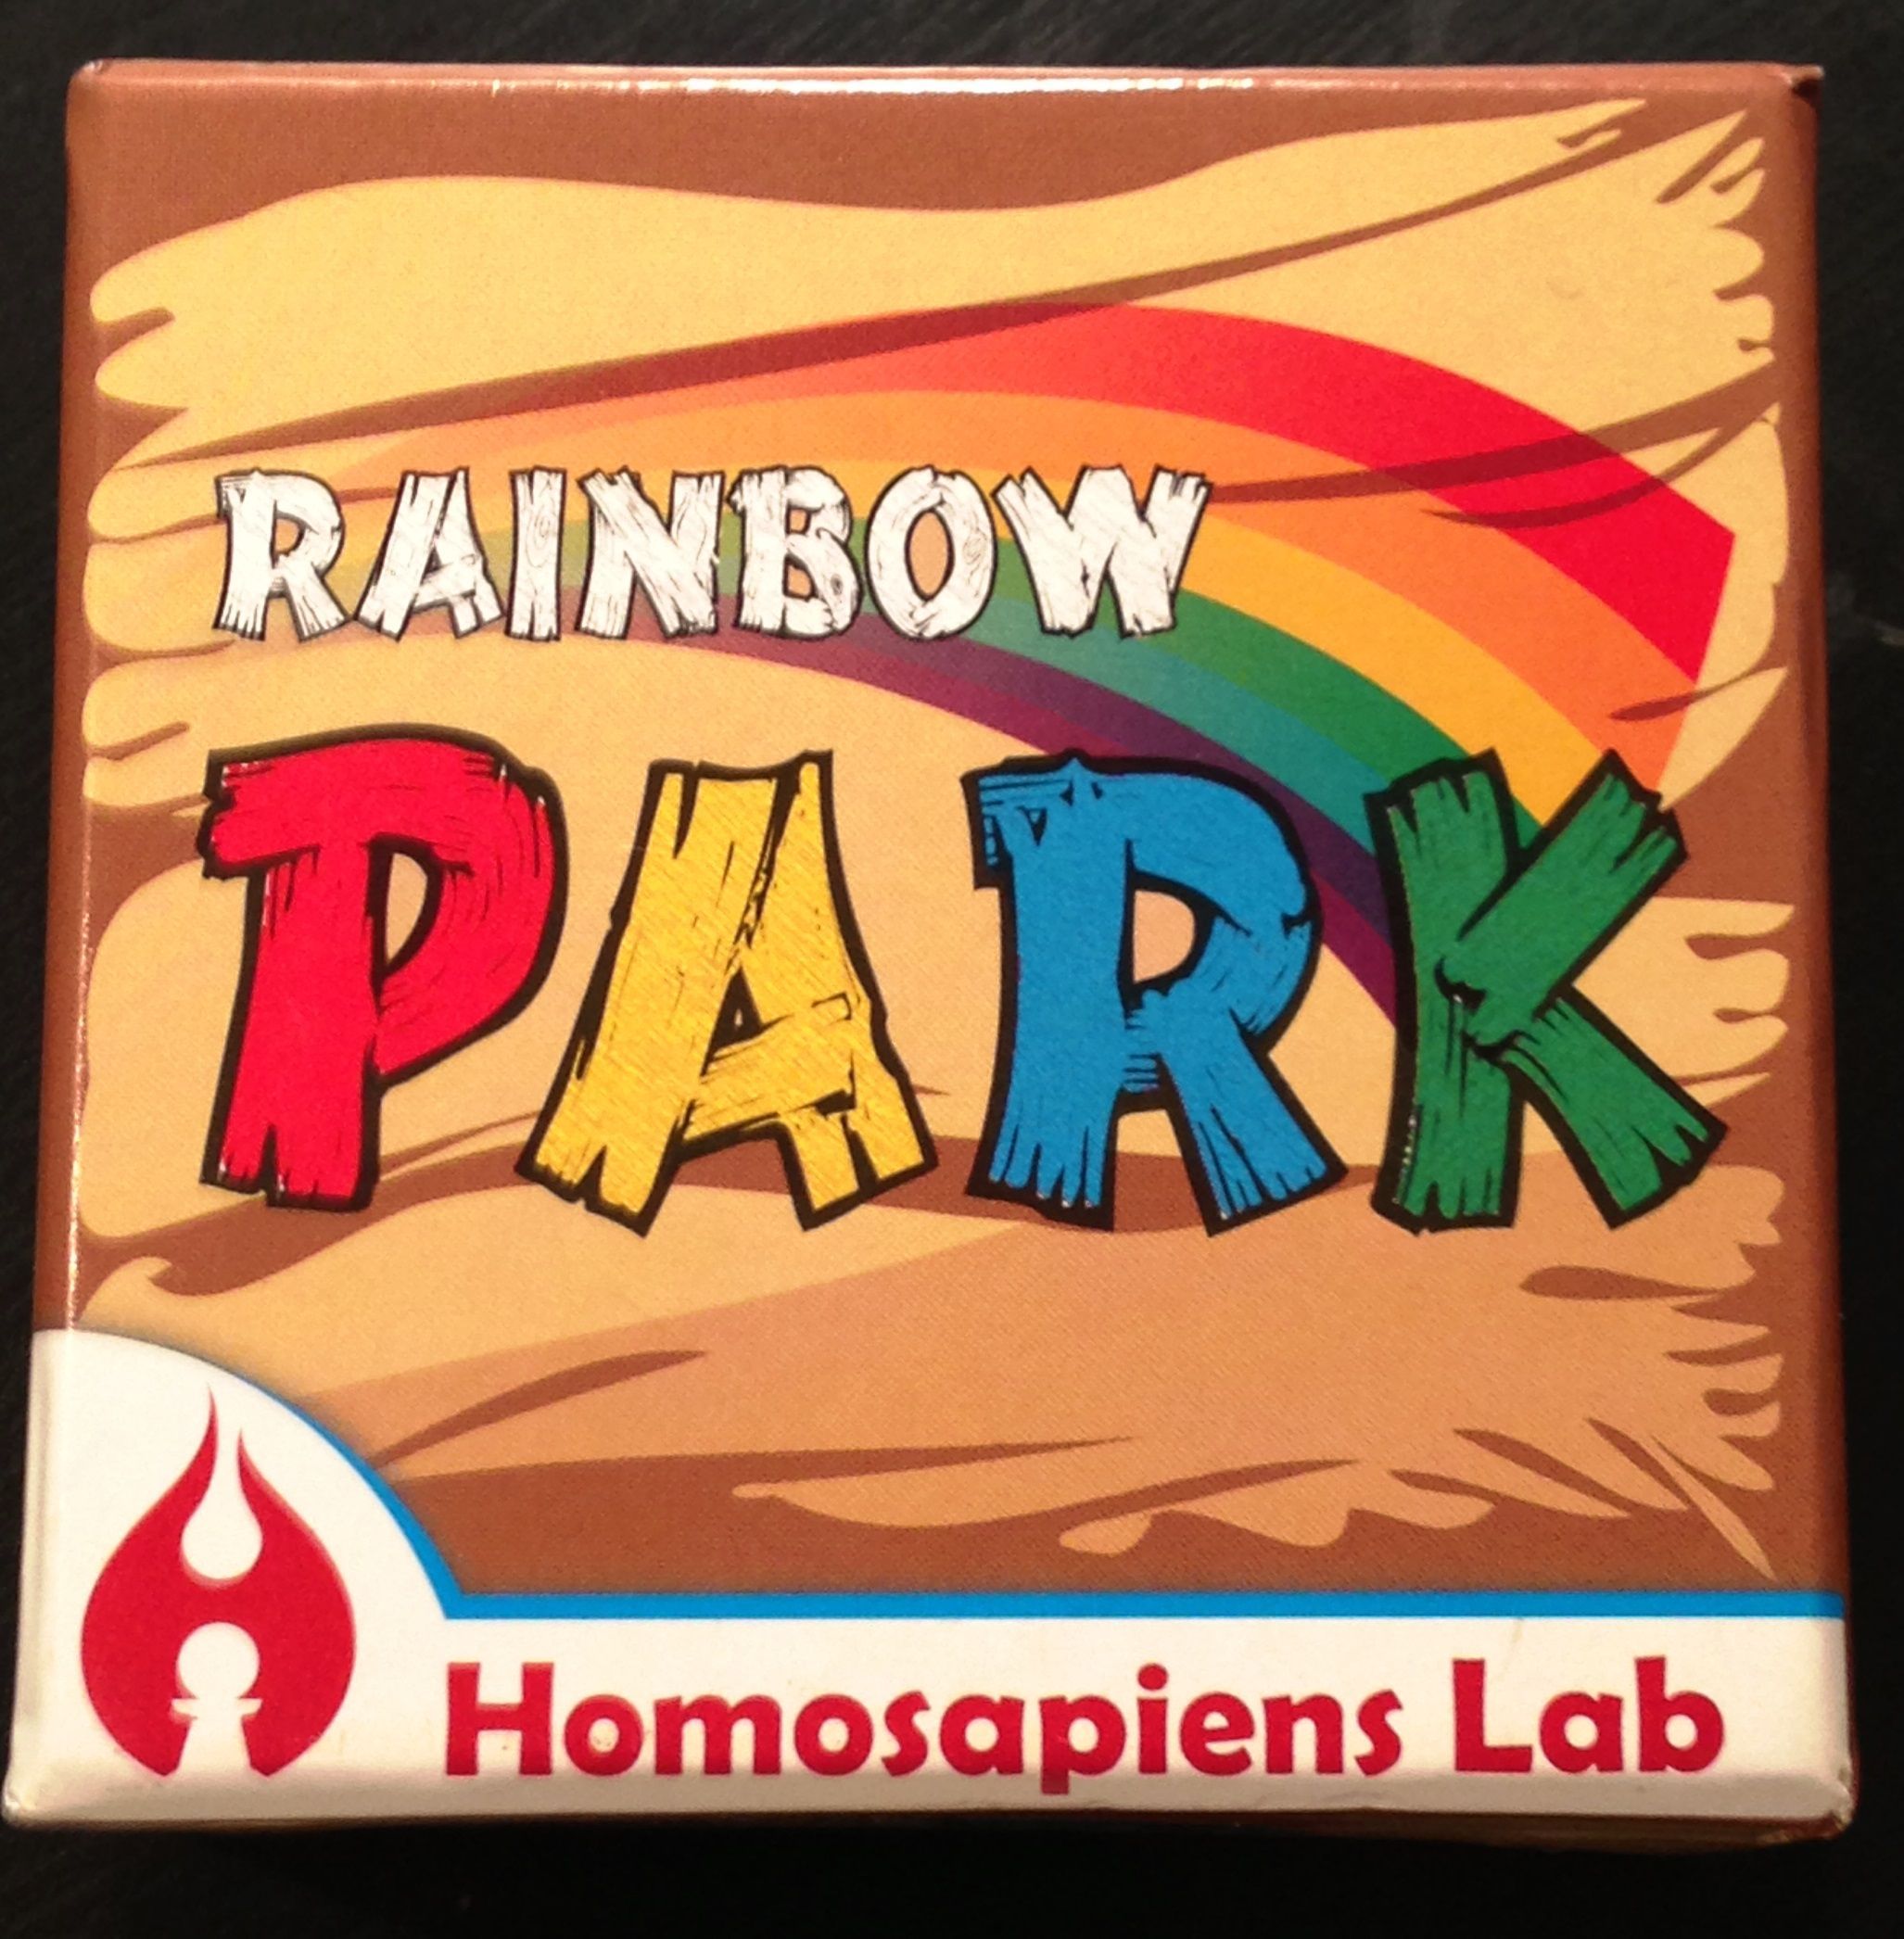 Rainbow Park